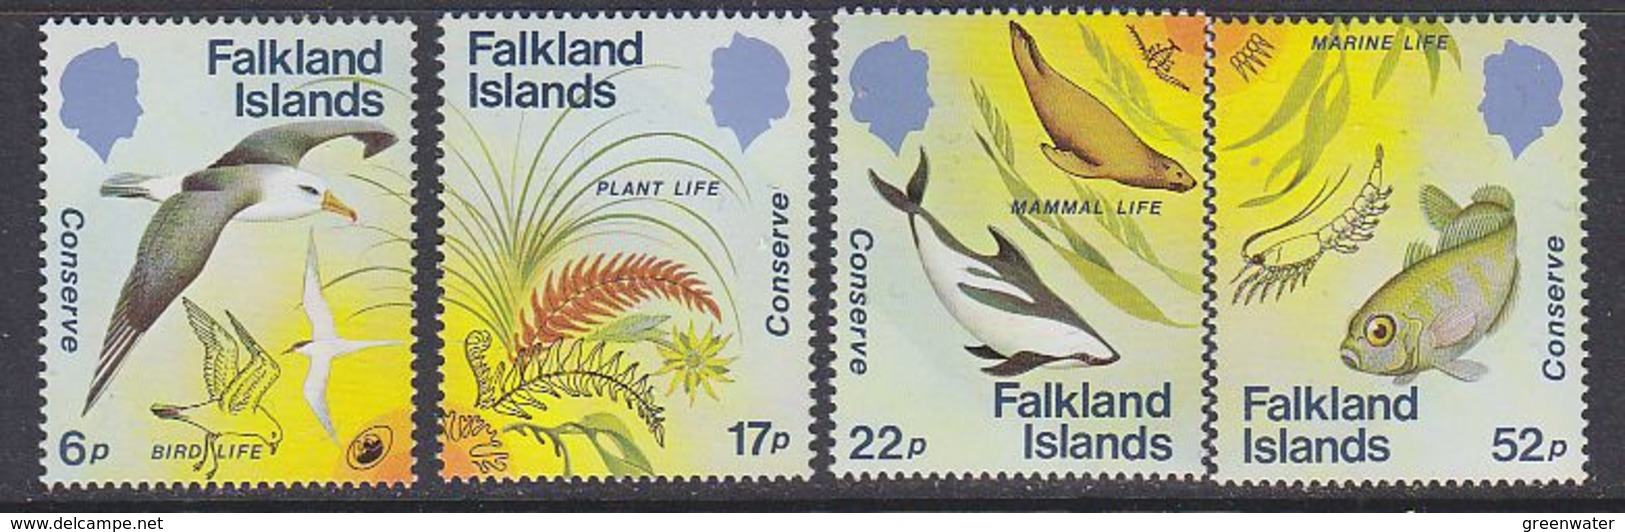 Falkland Islands 1984 Nature Conservation 4v ** Mnh (41759) - Falkland Islands